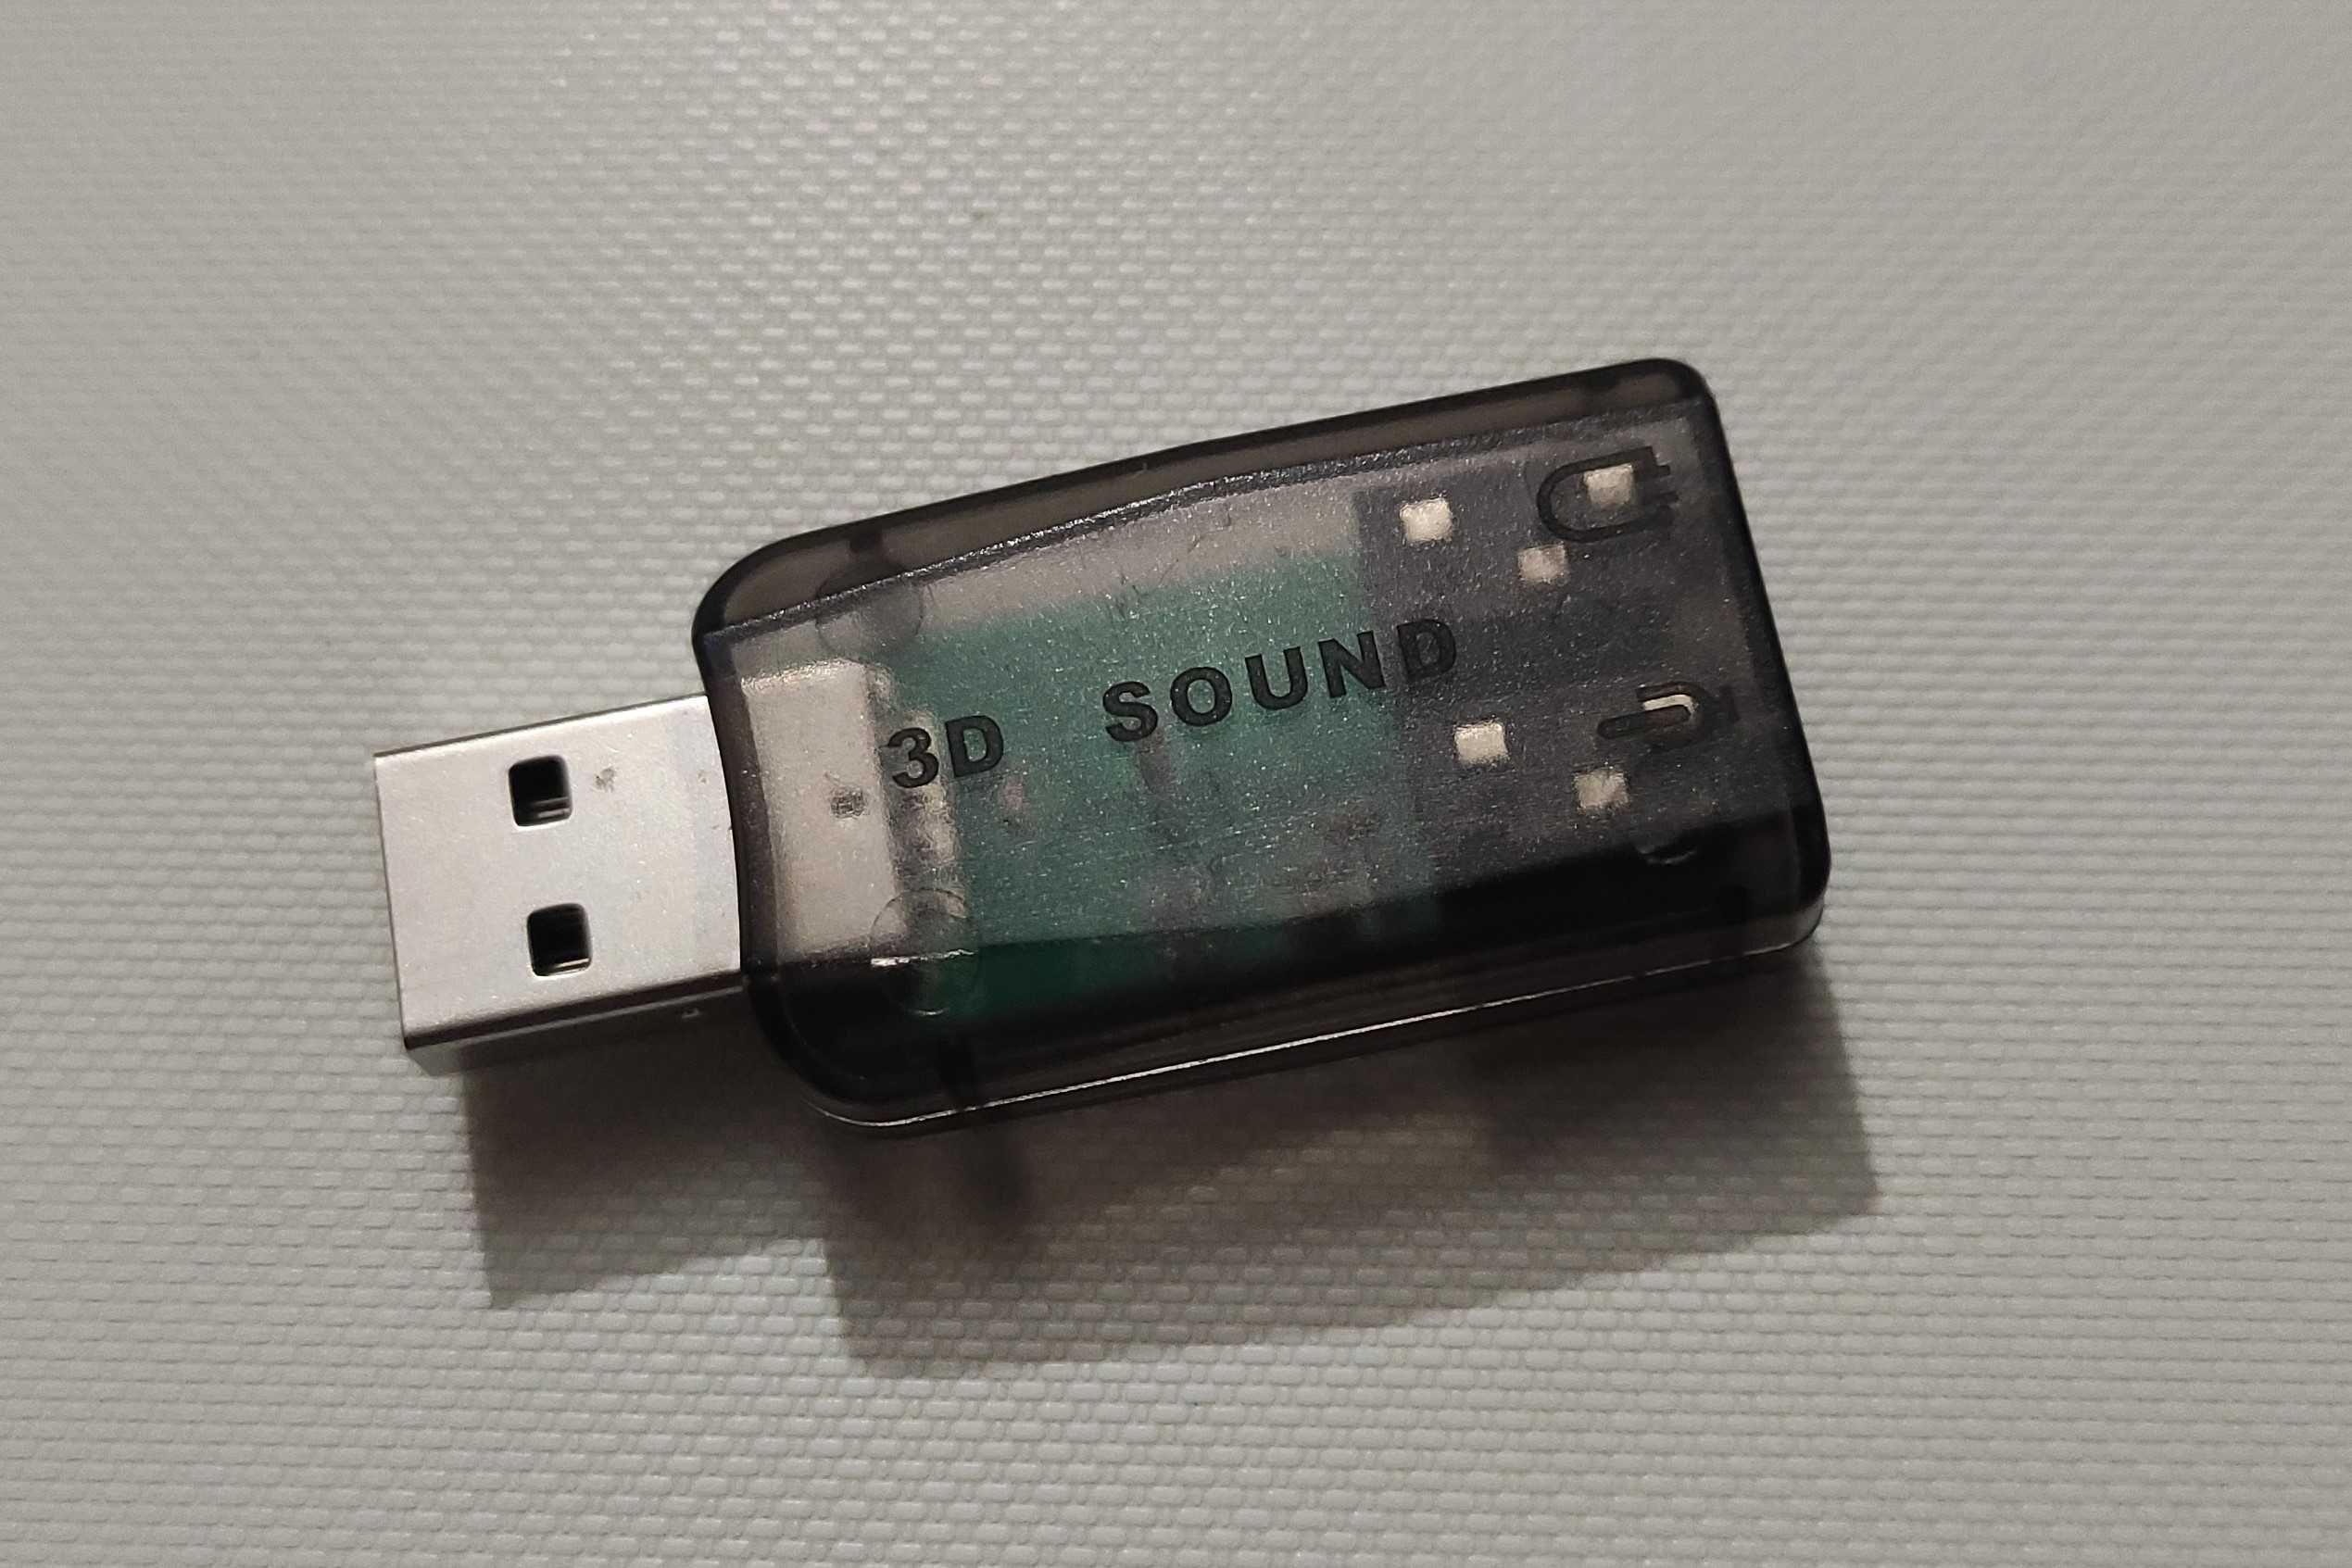 Миниатюрная звуковая карта USB 3D Sound для компьютера или ноутбука.